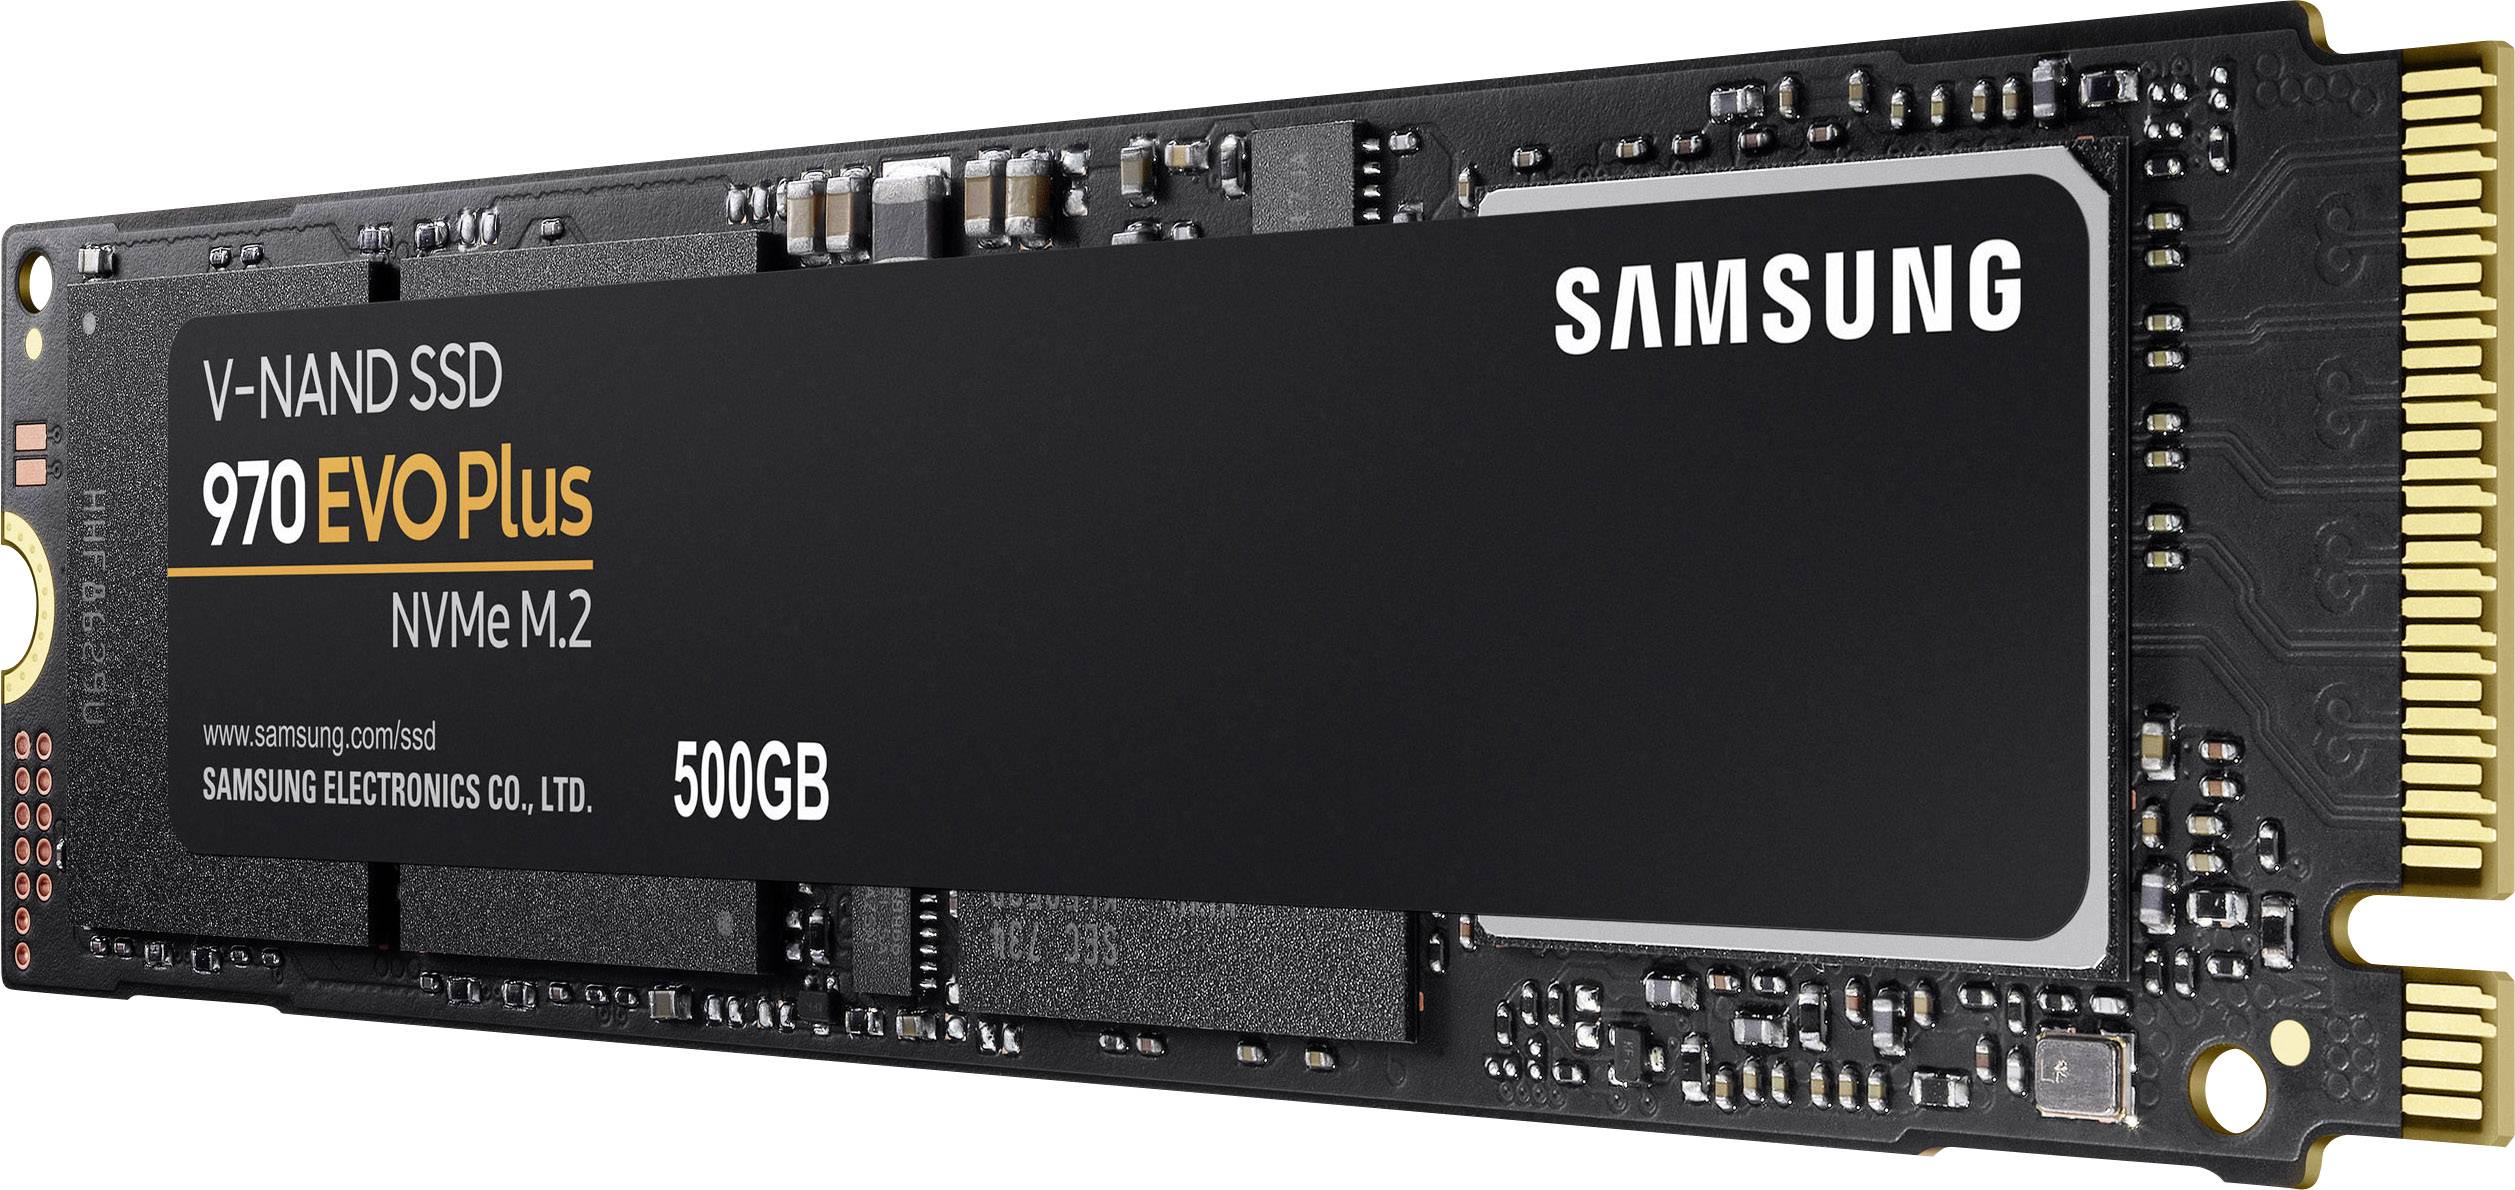 Sund mad Konklusion Modtager Samsung 970 EVO Plus 500 GB NVMe/PCIe M.2 internal SSD M.2 NVMe PCIe 3.0 x4  Retail MZ-V7S500BW | Conrad.com